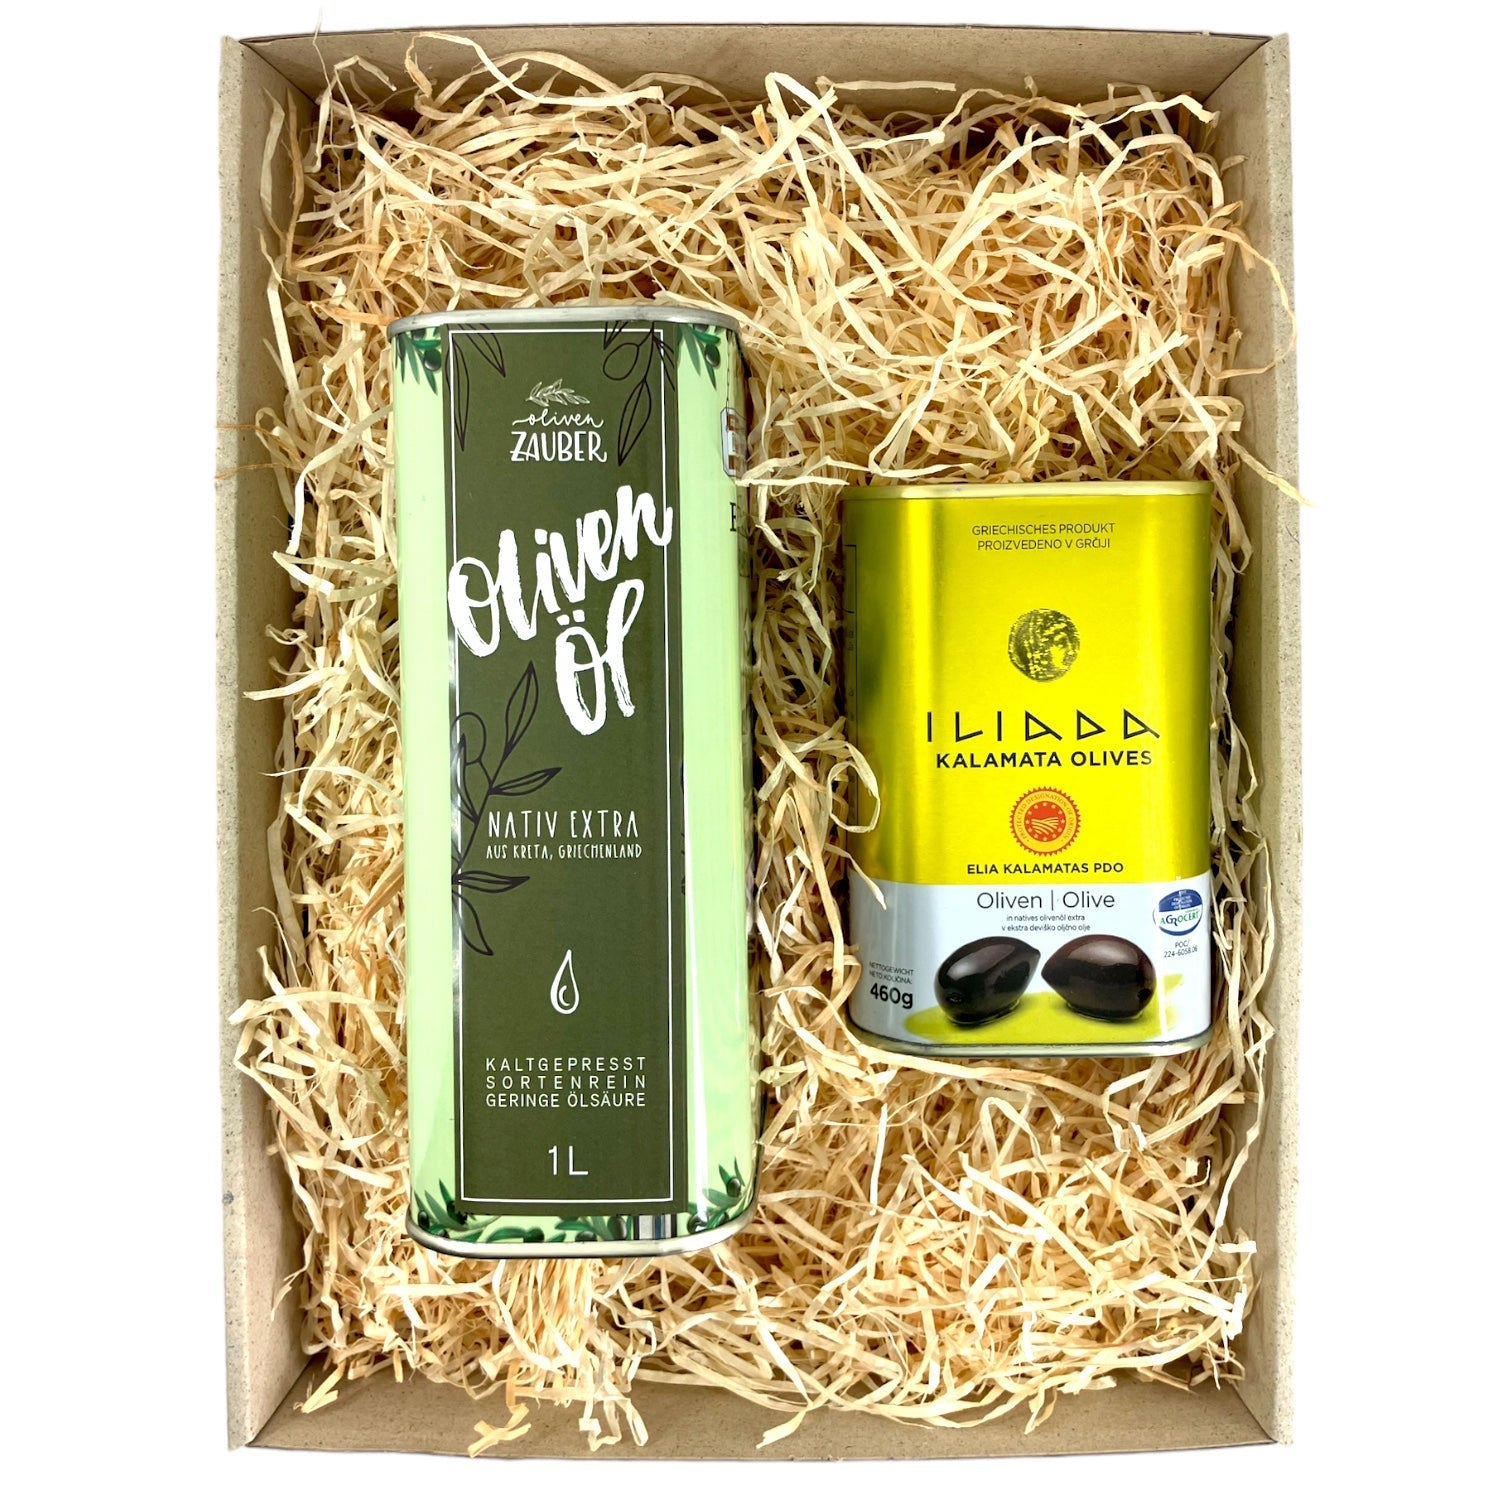 OlivenZauber Geschenkset “Oliven & Öl” - OlivenZauber - Olivenöl neu erleben